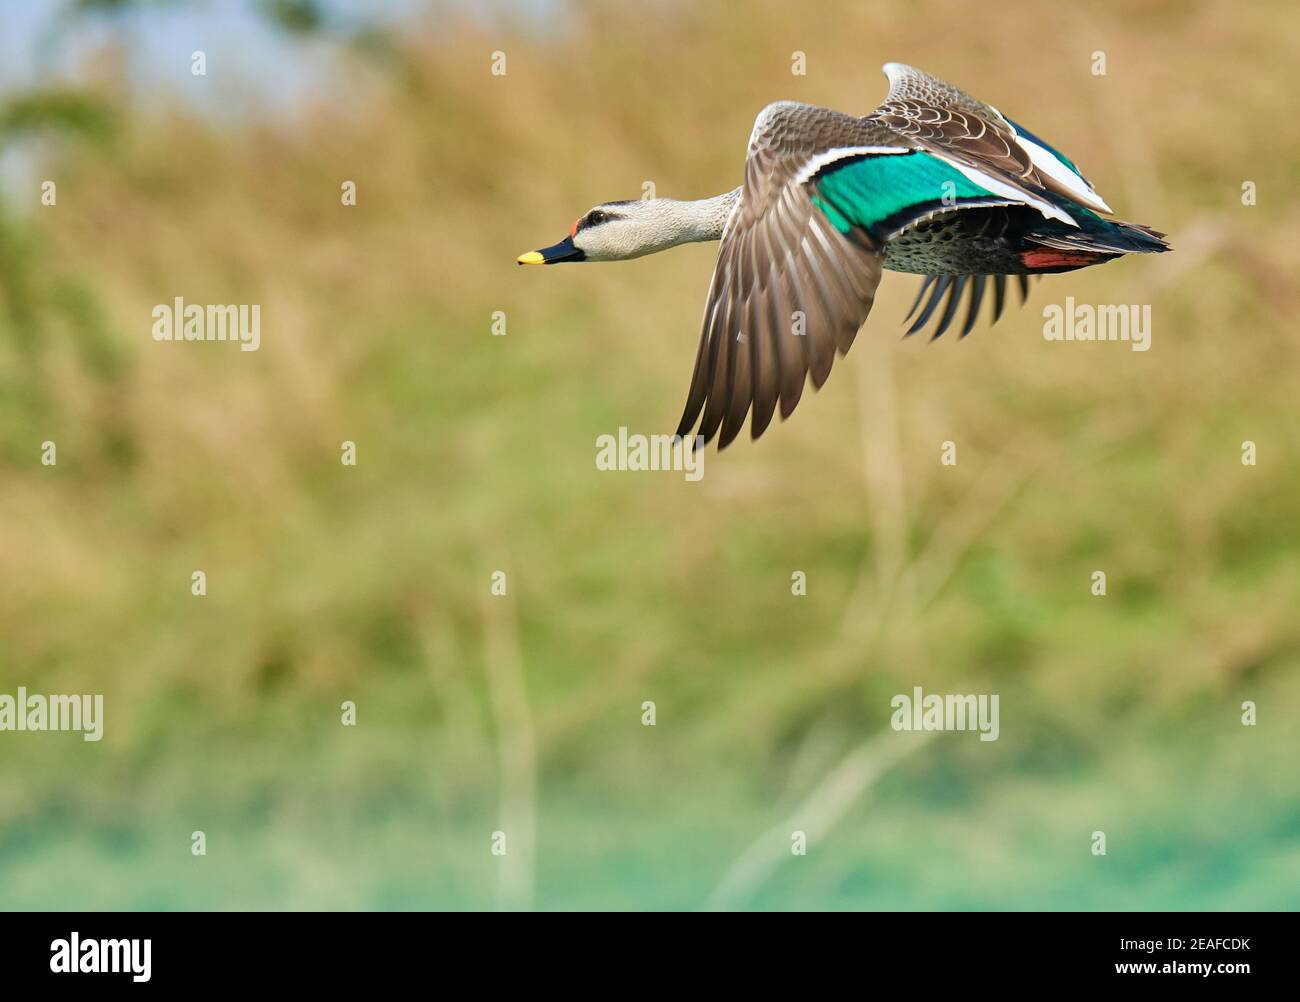 Les couleurs sont les sourires de la nature - canard indien à bec direct Banque D'Images